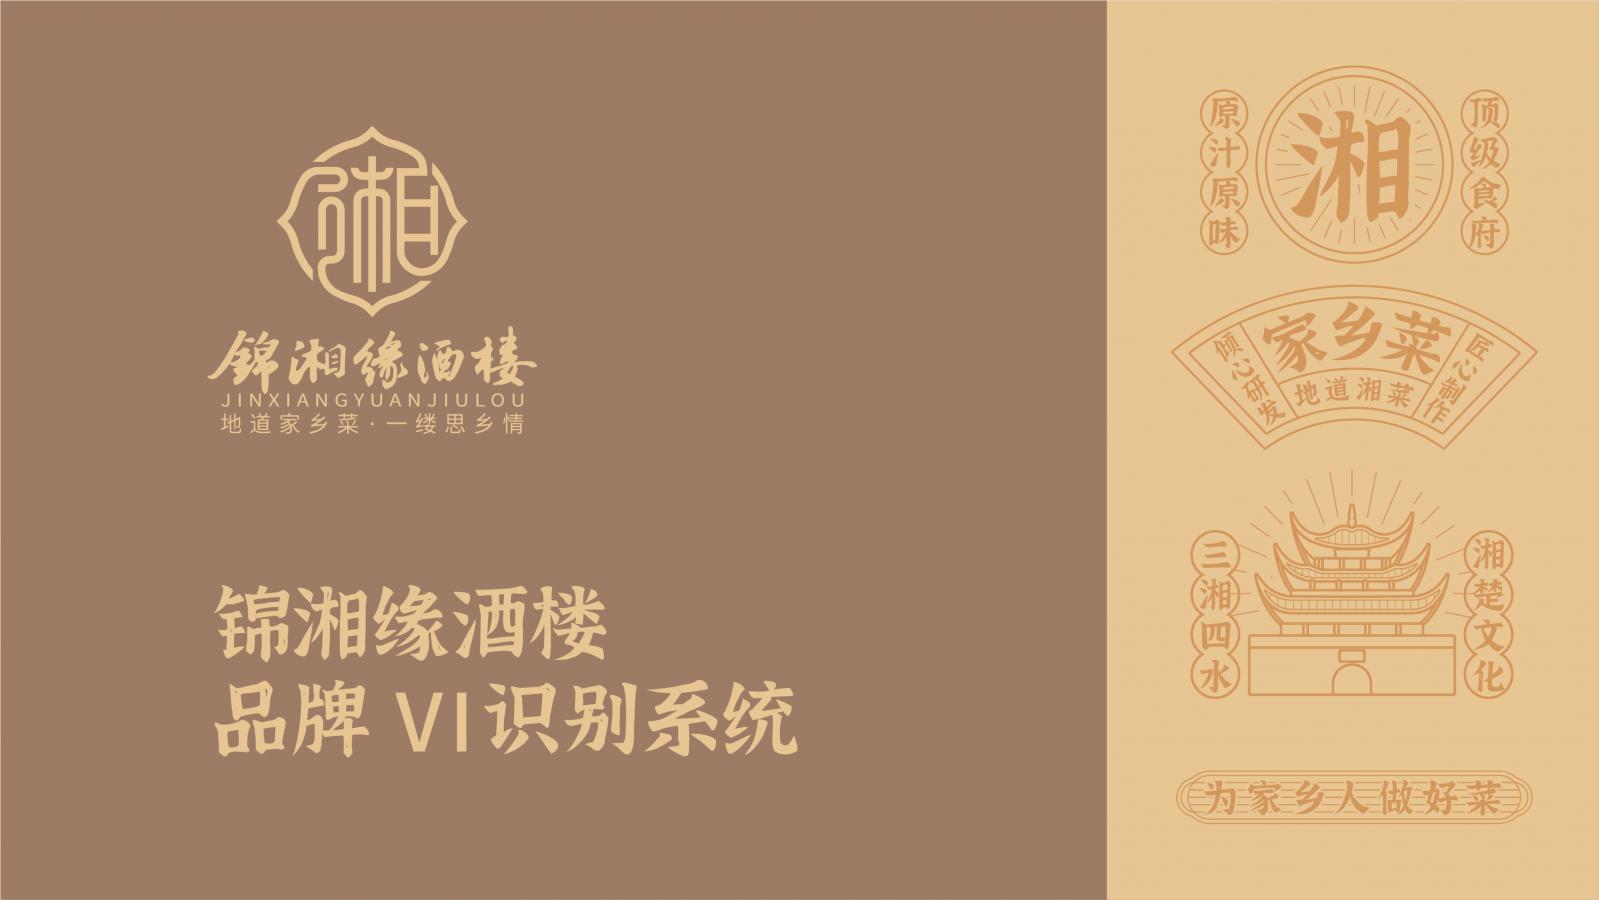 锦湘缘-餐饮品牌VI设计 上海餐饮VI设计 餐饮VI设计 上海餐饮VI设计公司 第1张